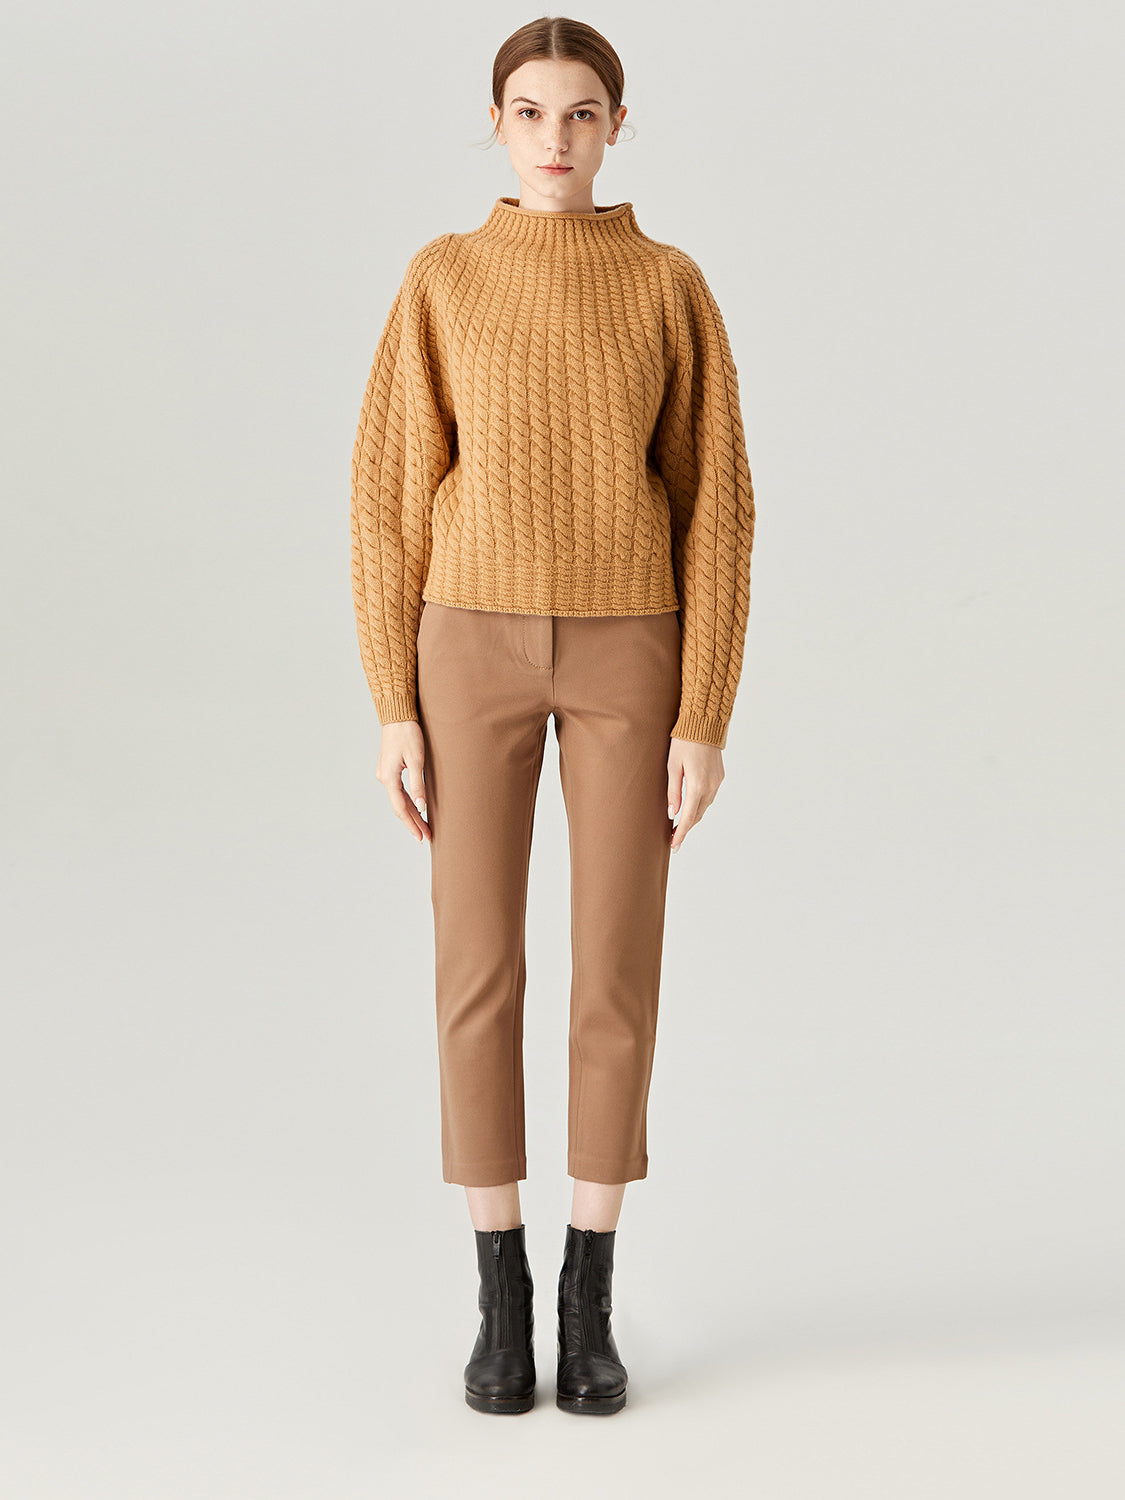 Adoring Heart Tangerine Knit Turtleneck Wool Sweater